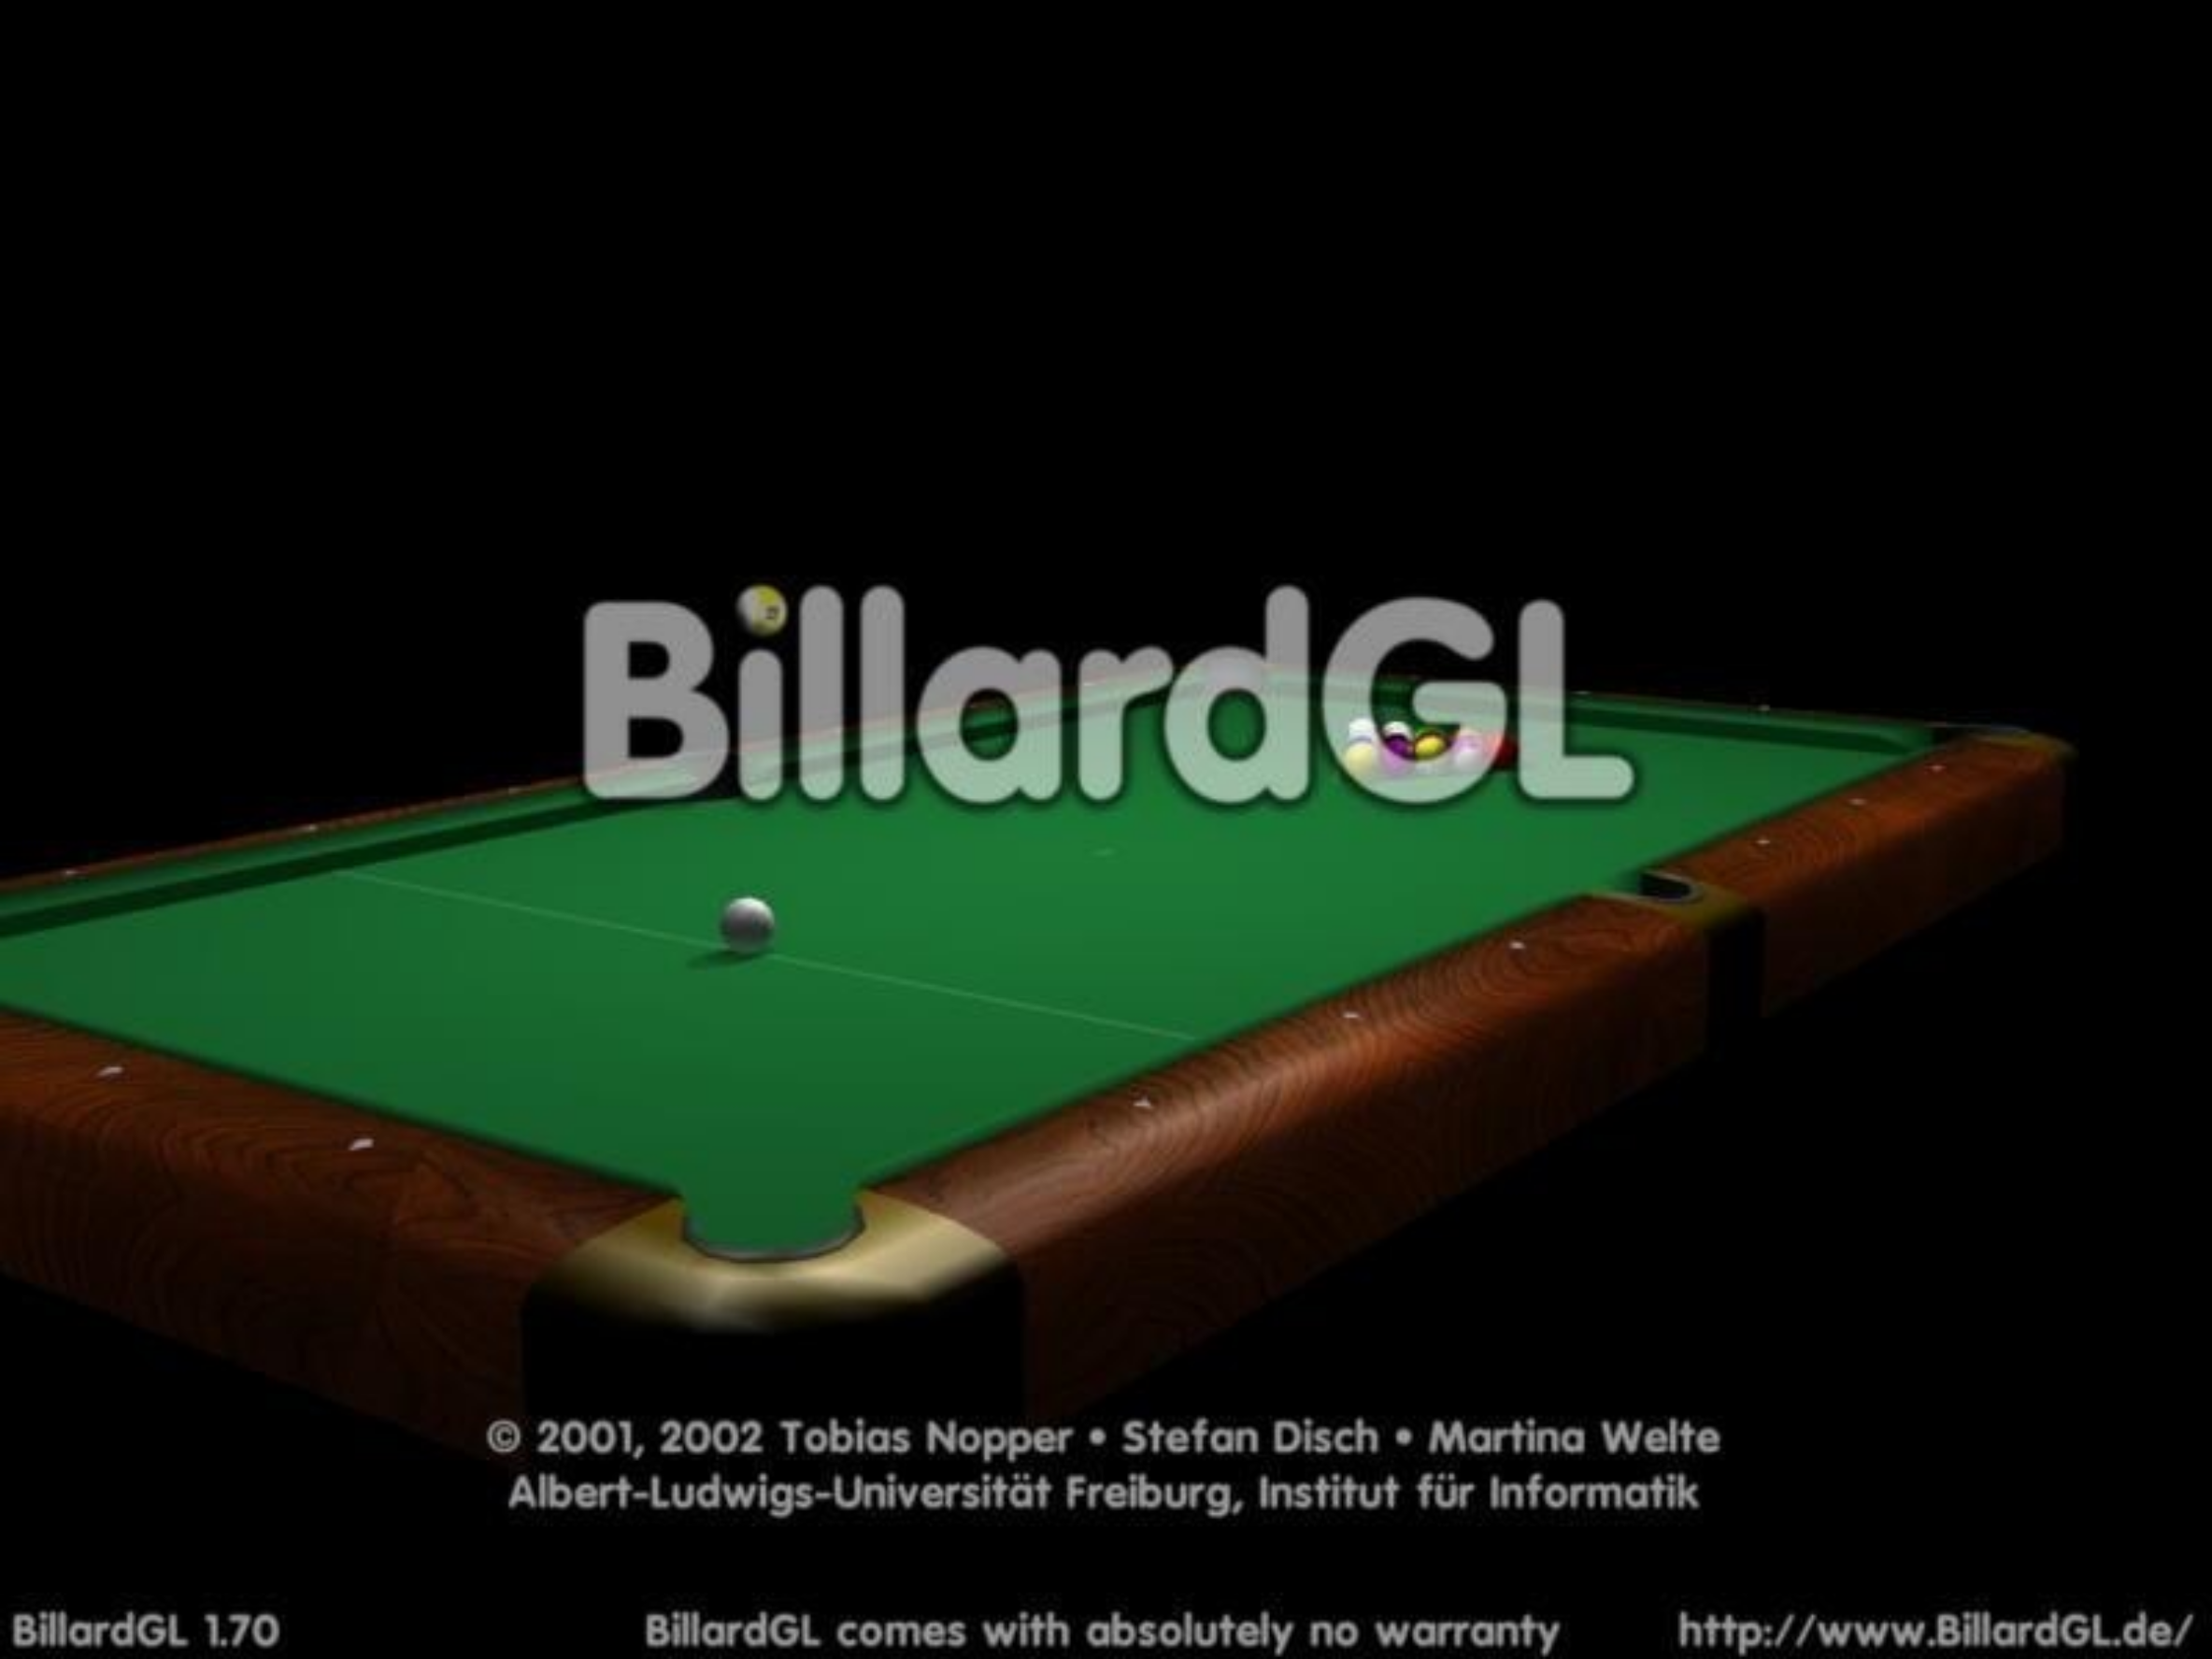 como-instalar-o-jogo-billiards-no-ubuntu-fedora-debian-e-opensuse